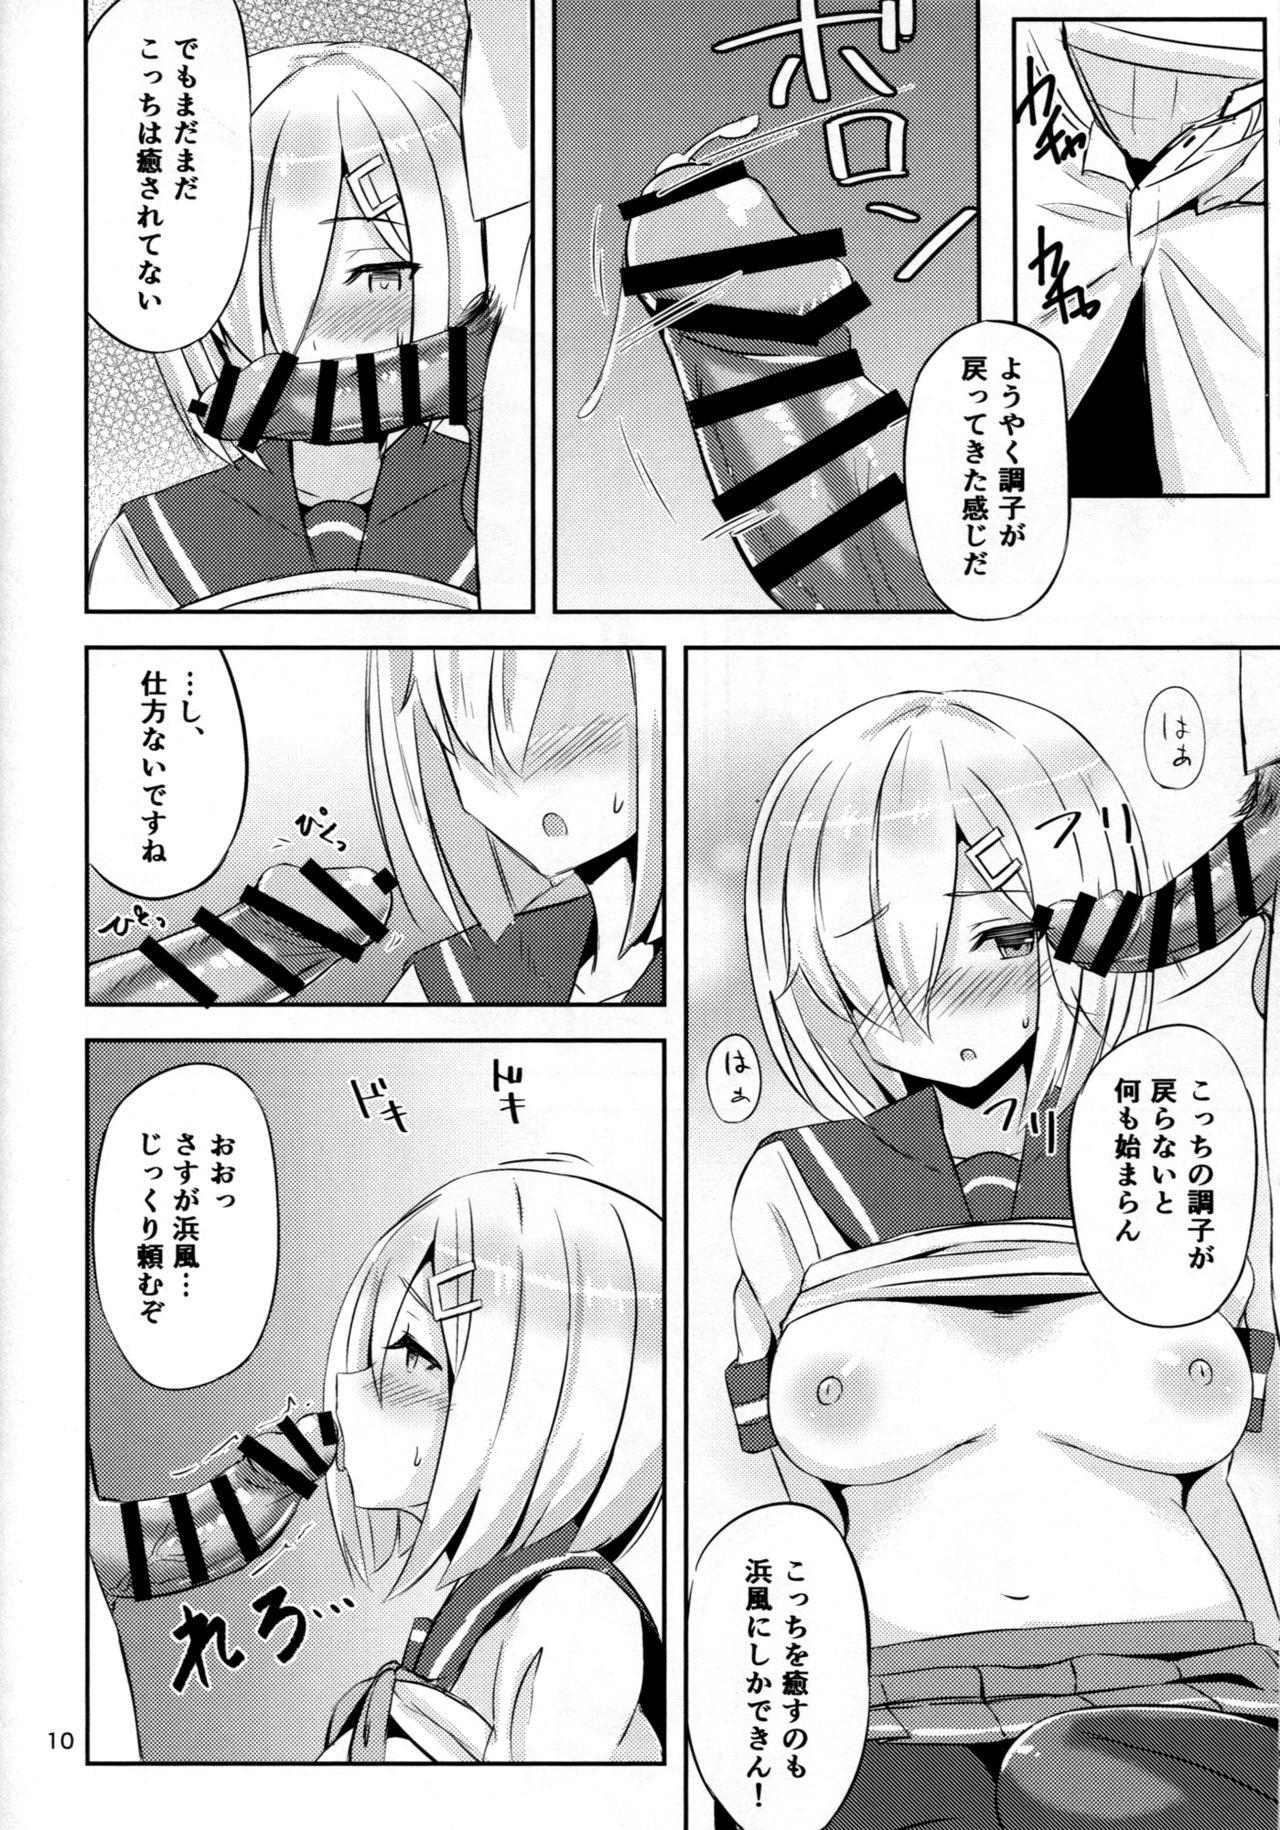 Chacal Hamakaze ni Iyasaretai. - Kantai collection Vagina - Page 9